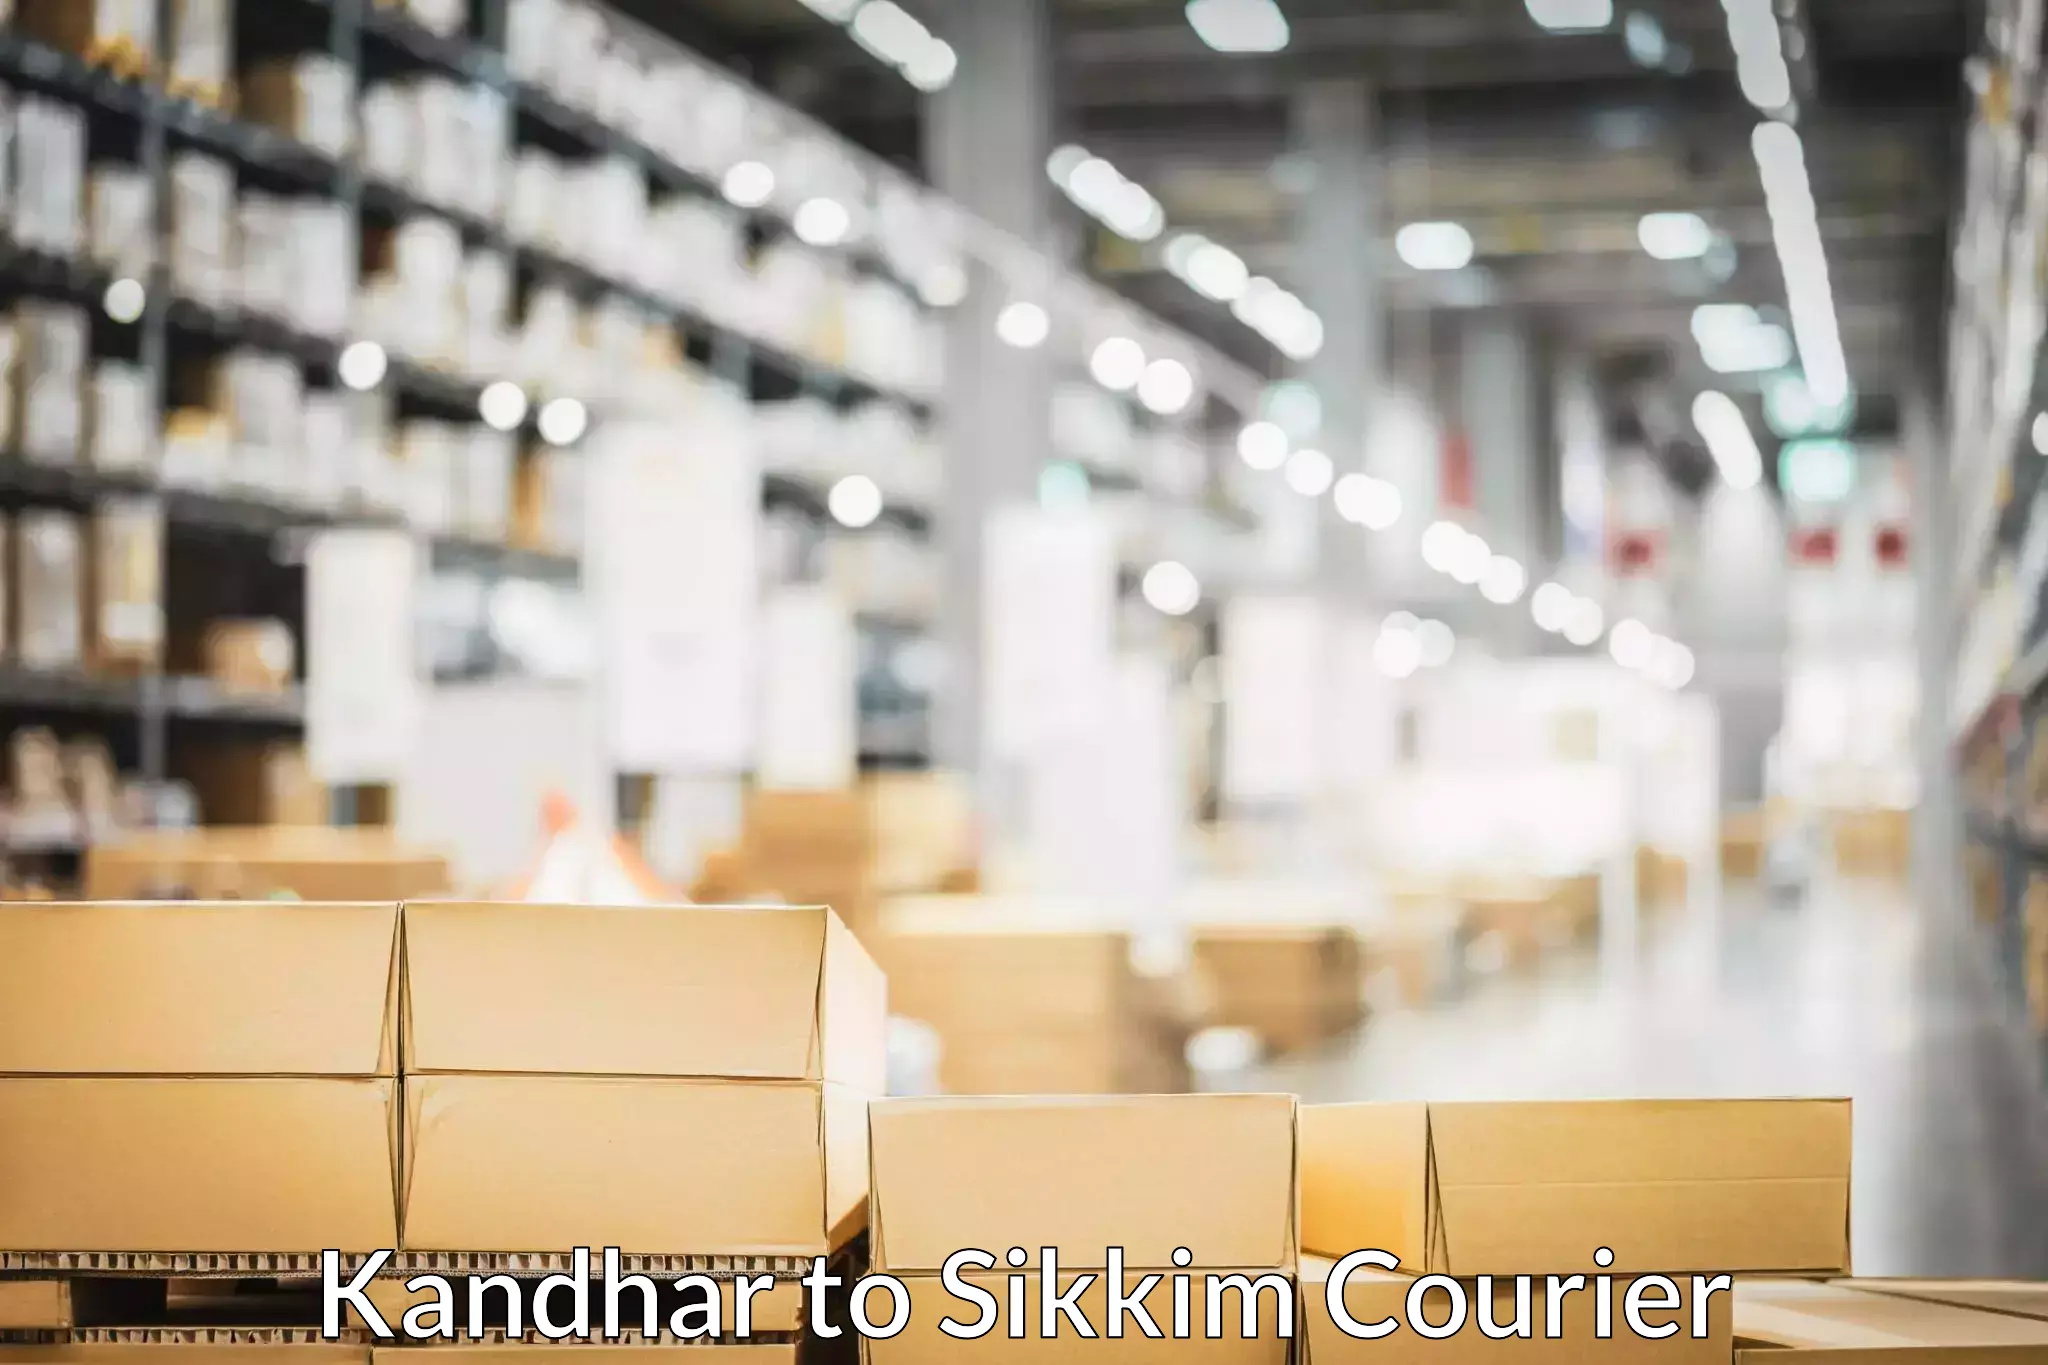 Professional packing services Kandhar to Mangan